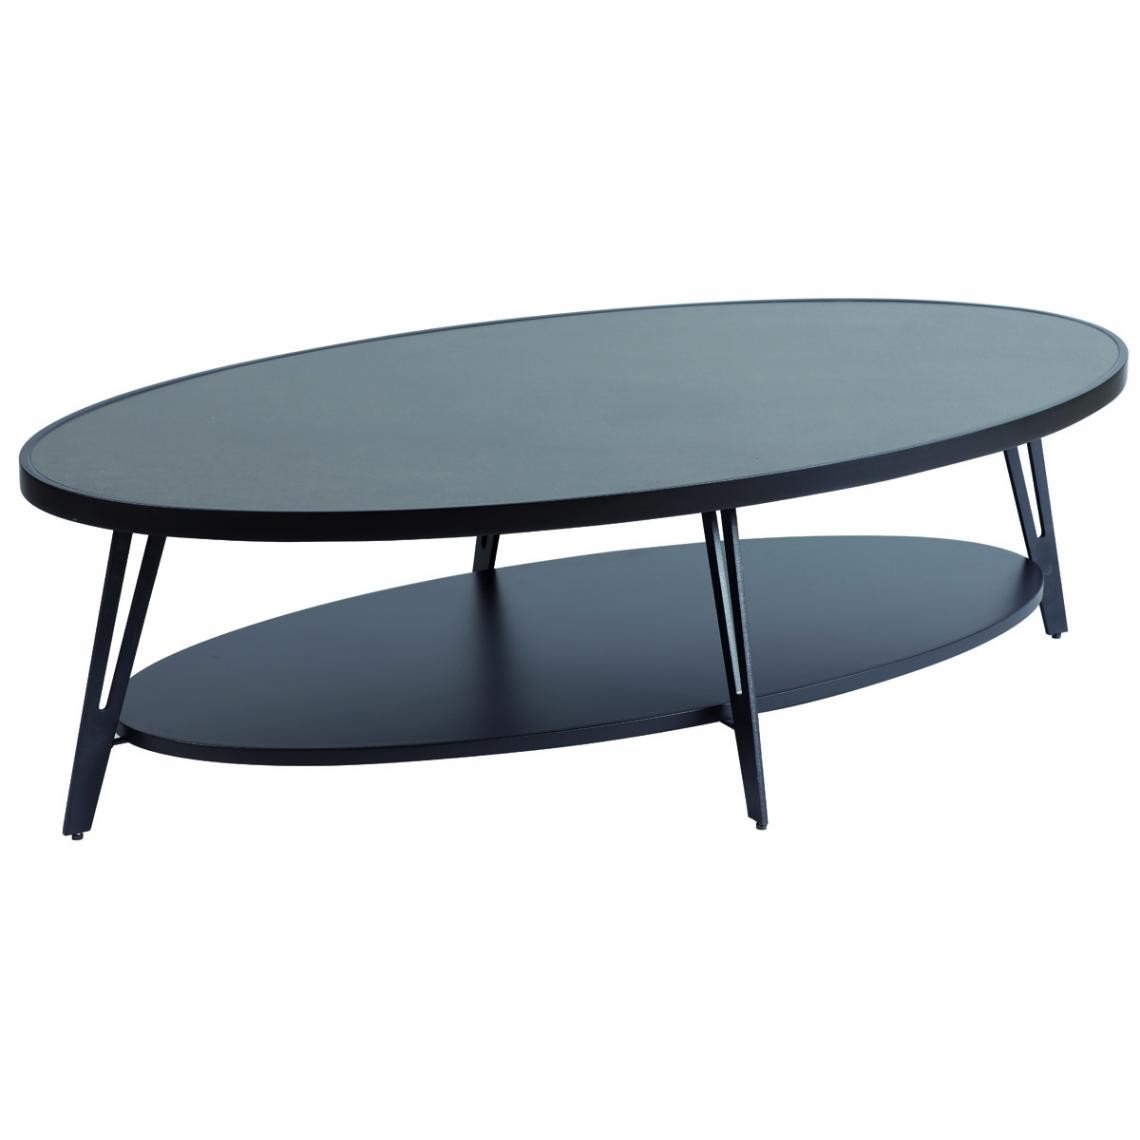 Pegane - Table basse en MDF / céramique coloris noir mat - Longueur 135 x profondeur 70 x hauteur 40 cm - Tables basses